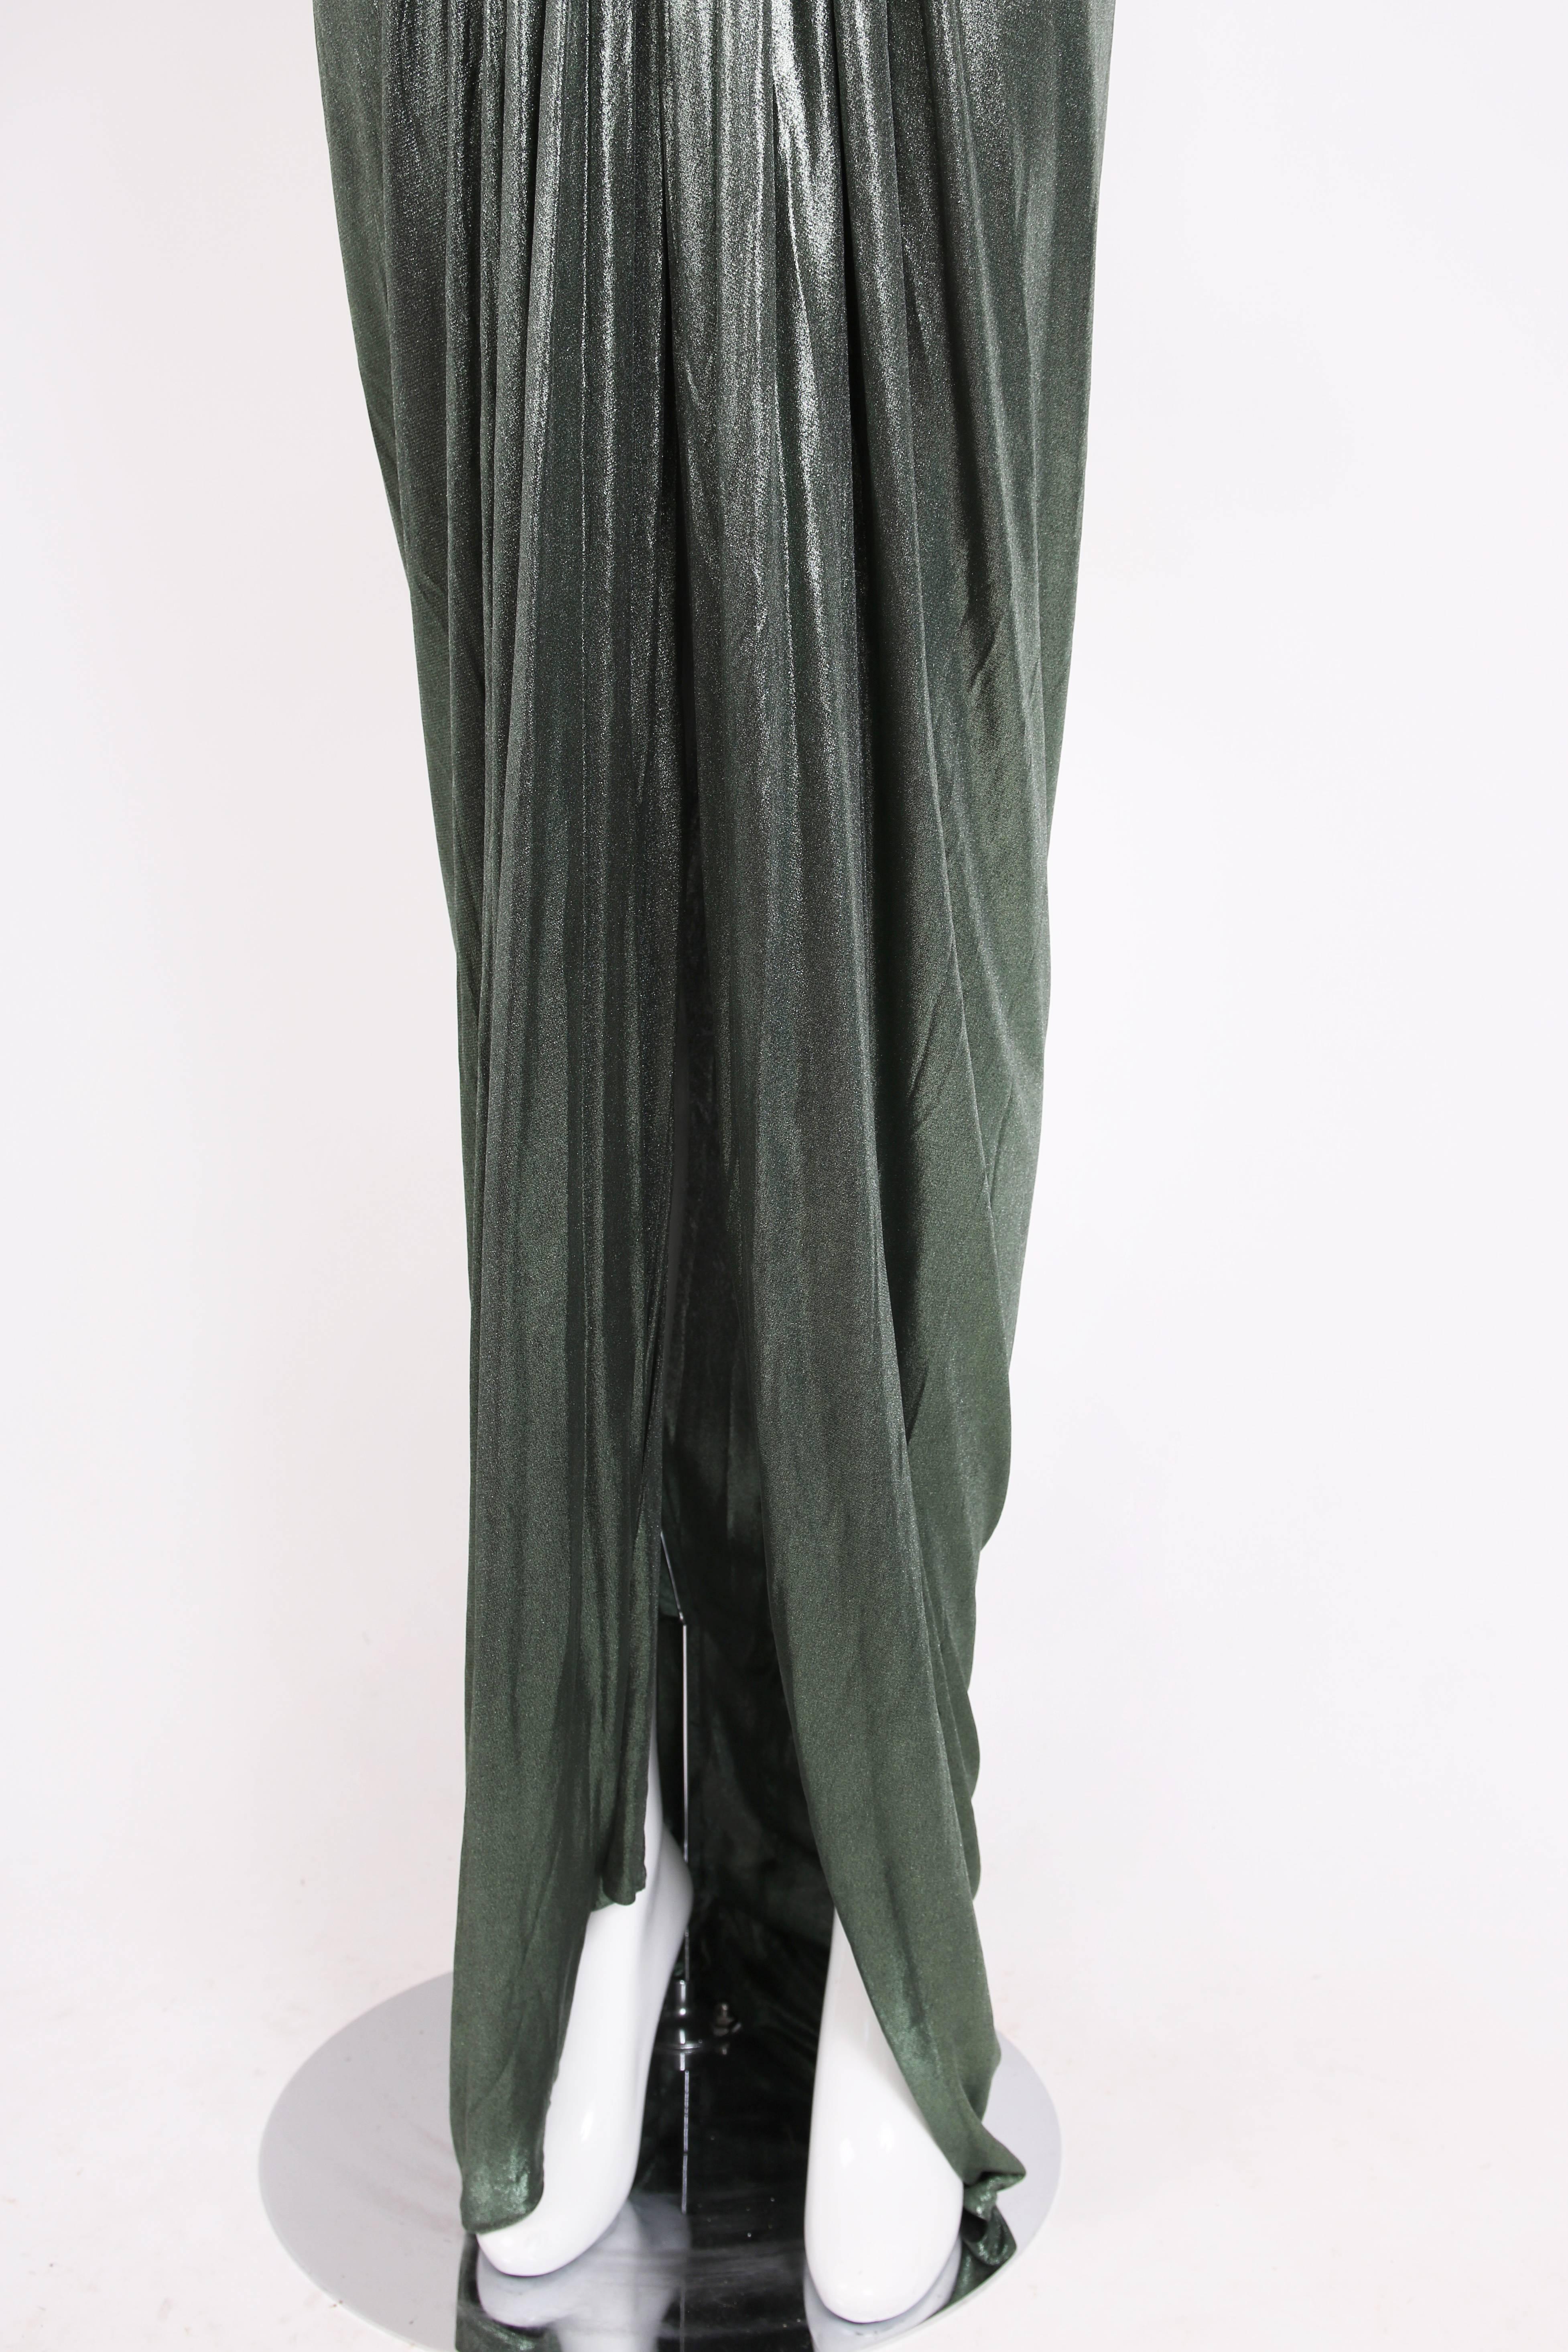 Roberto Cavalli Green Metallic Trained Stretch Evening Gown w/Plunge Neckline 2